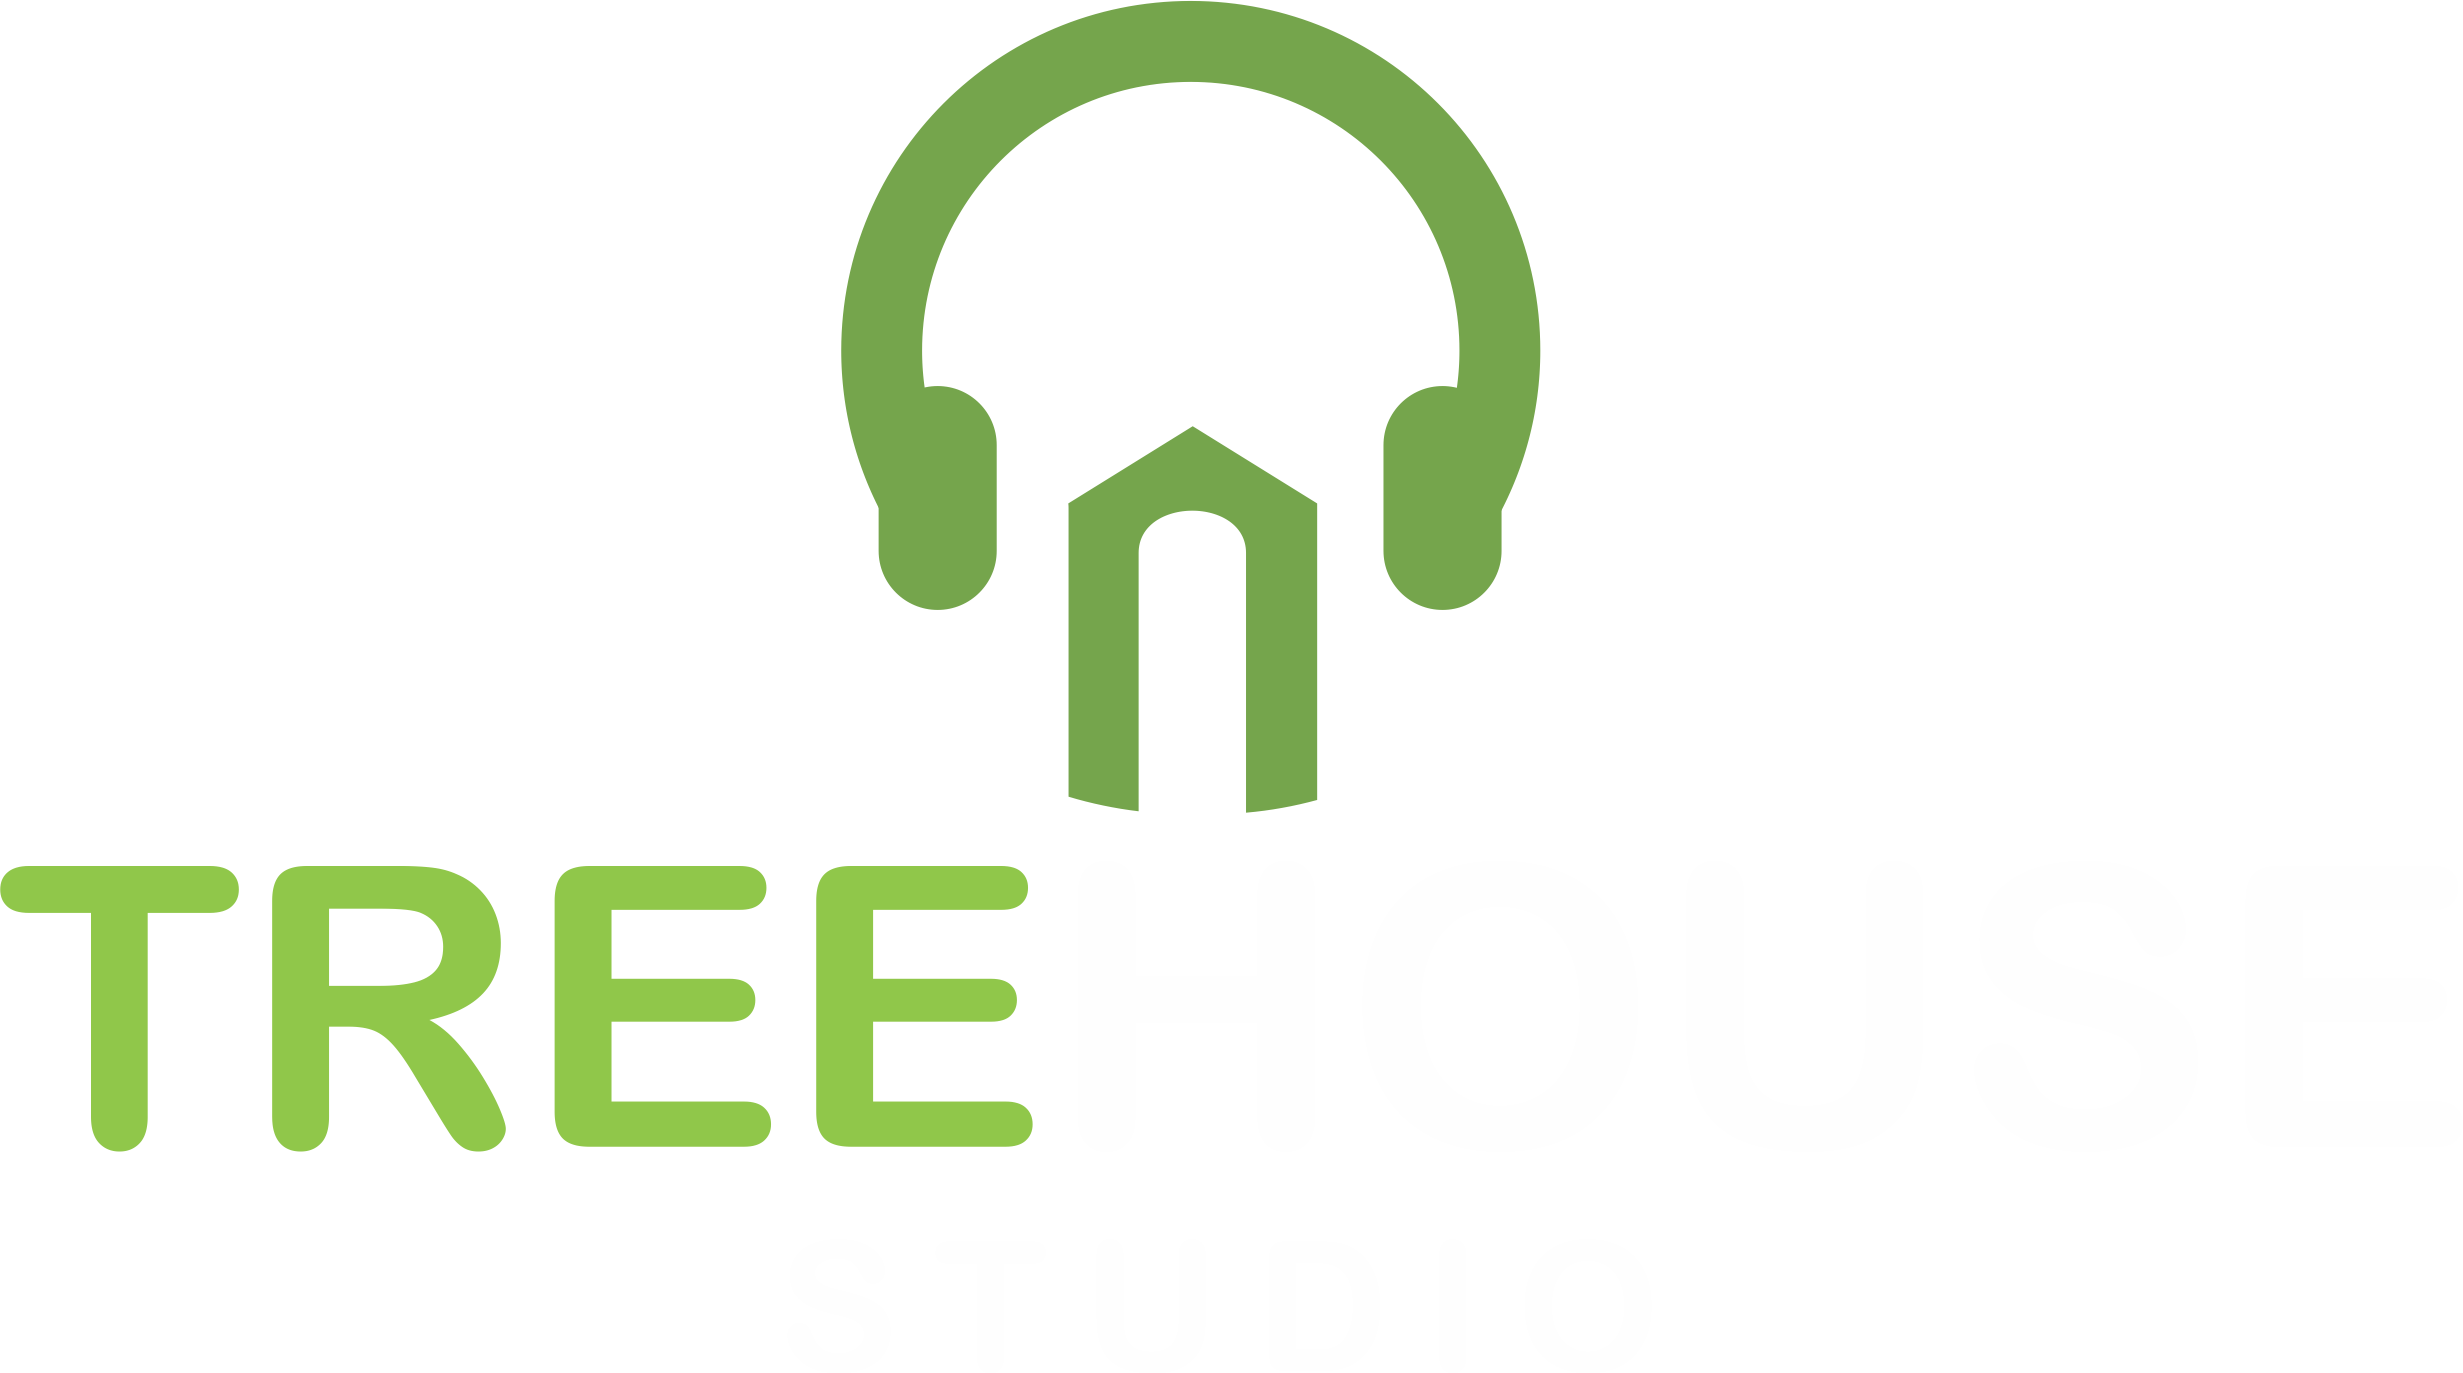 The Tree House Studio